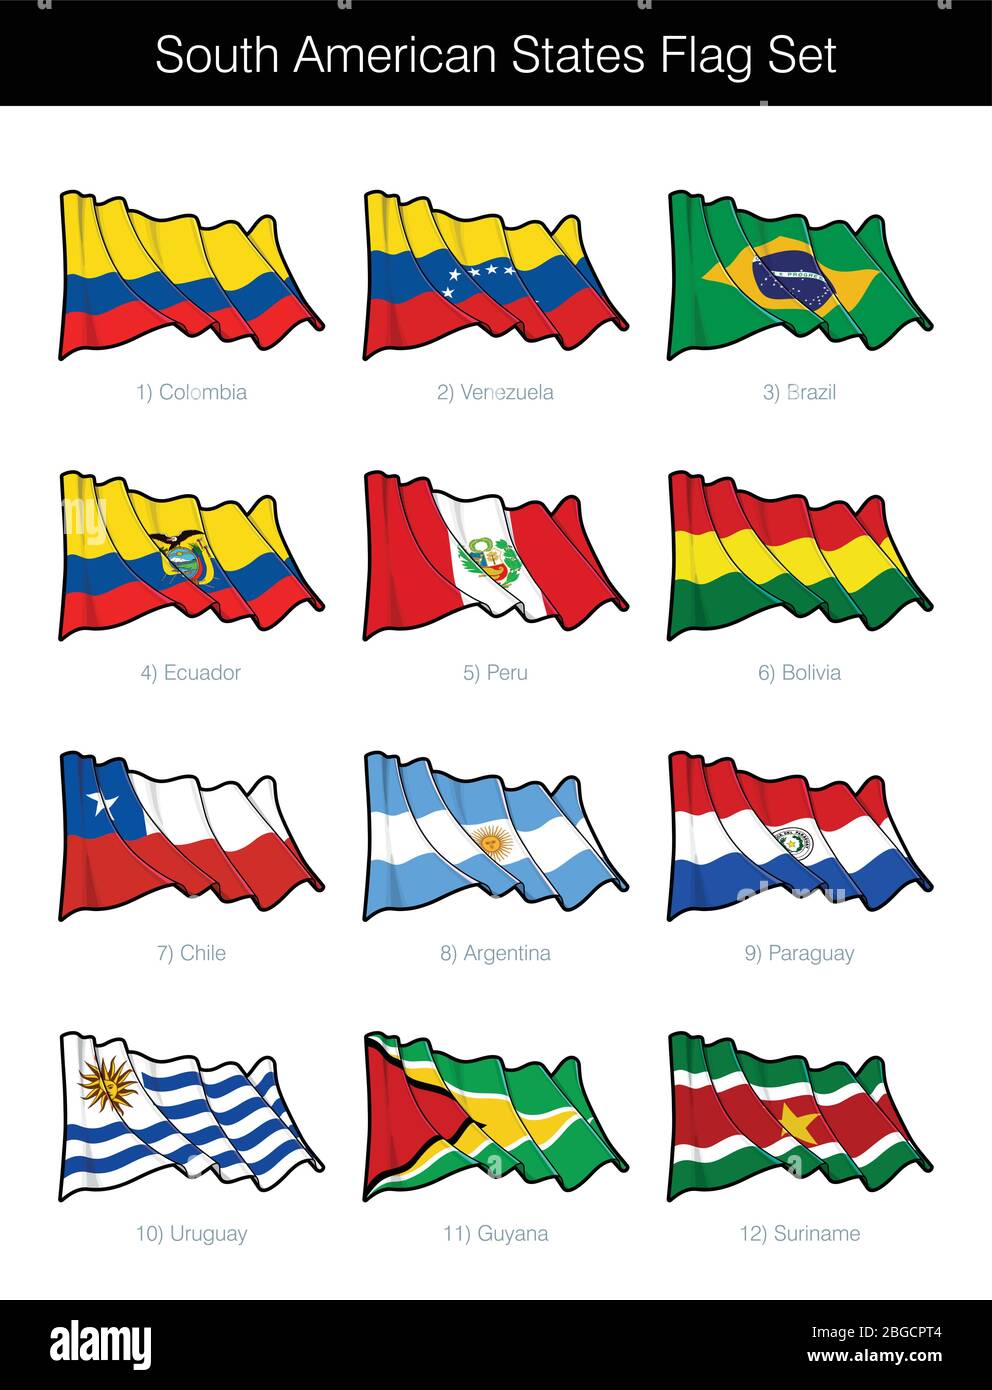 Südamerikanische Staaten Winken Flagge Set. Das Set enthält die Flaggen von Argentinien, Bolivien, Brasilien, Chile, Ecuador, Guyana, Paraguay, Peru, Surinam, Uru Stock Vektor